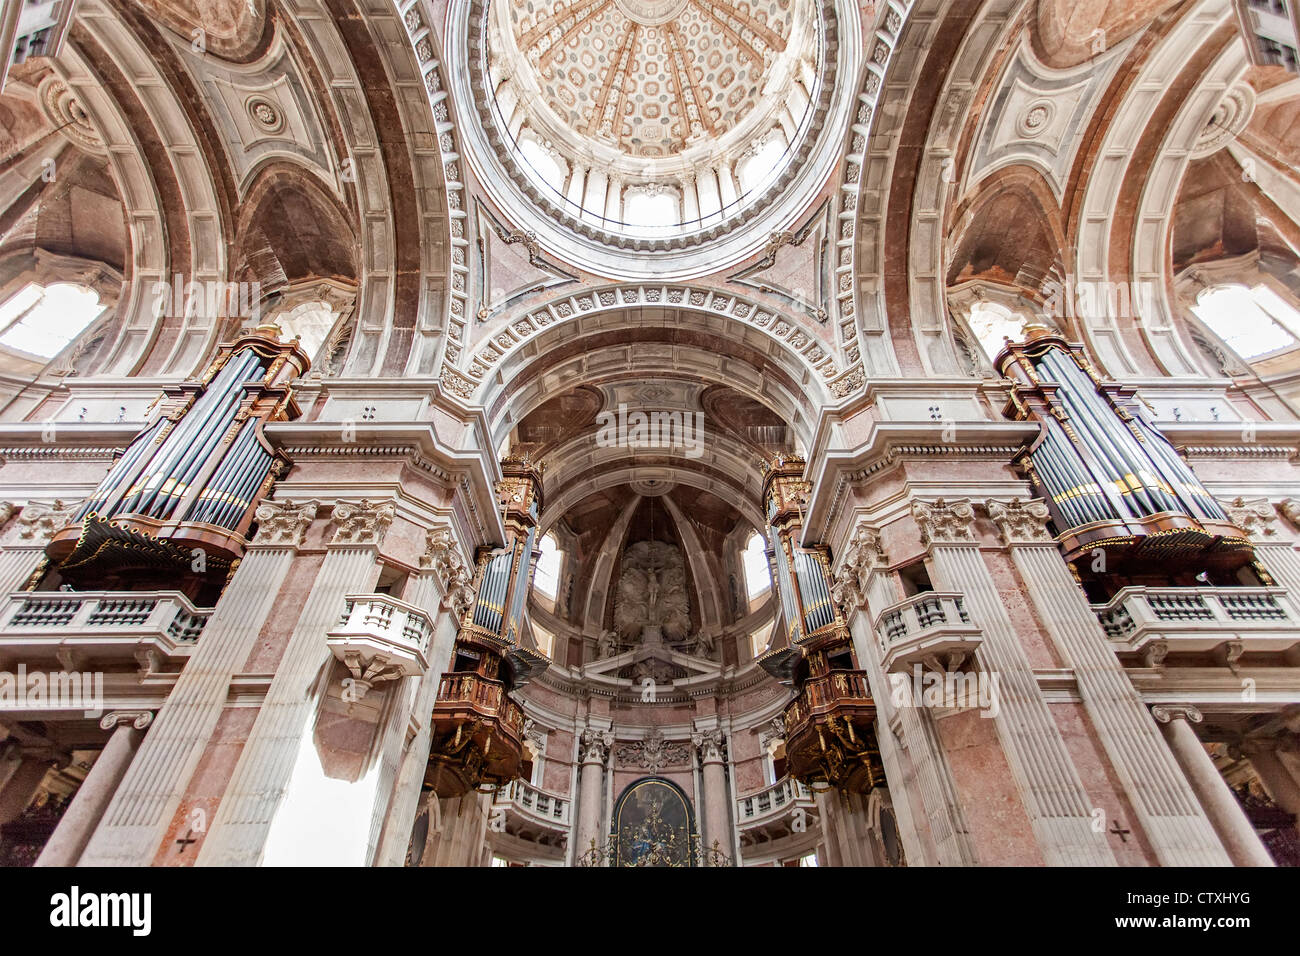 Vier der sechs Organe und Kuppel der Basilika von Mafra Palast und Kloster in Portugal. Barock-Architektur. Stockfoto